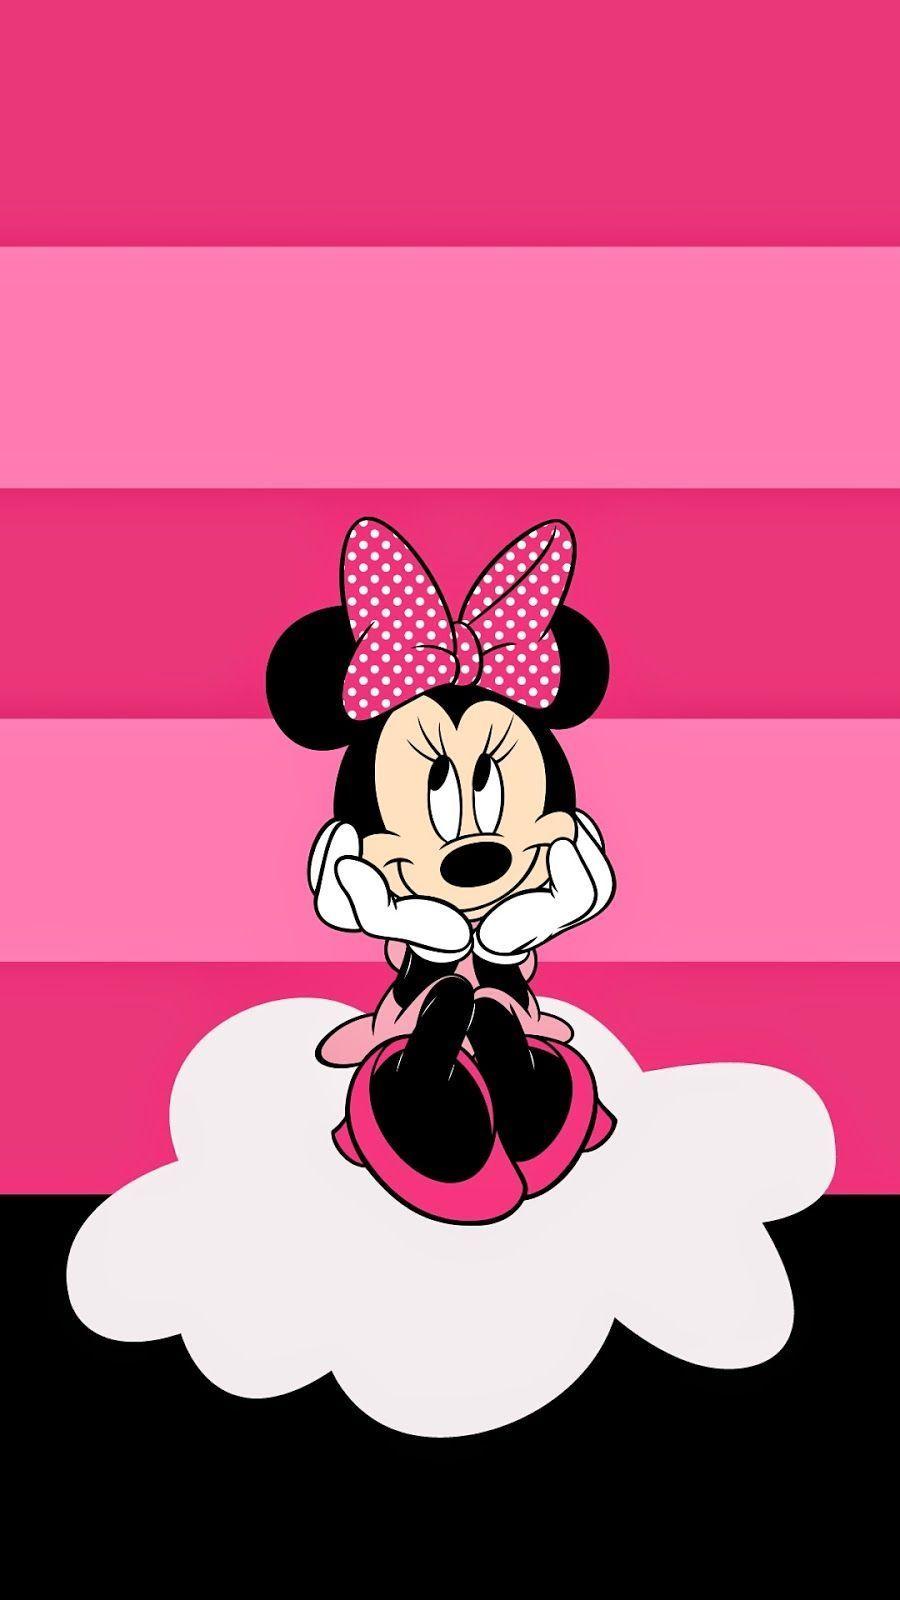 Pink Mickey Mouse Wallpapers - Top Những Hình Ảnh Đẹp